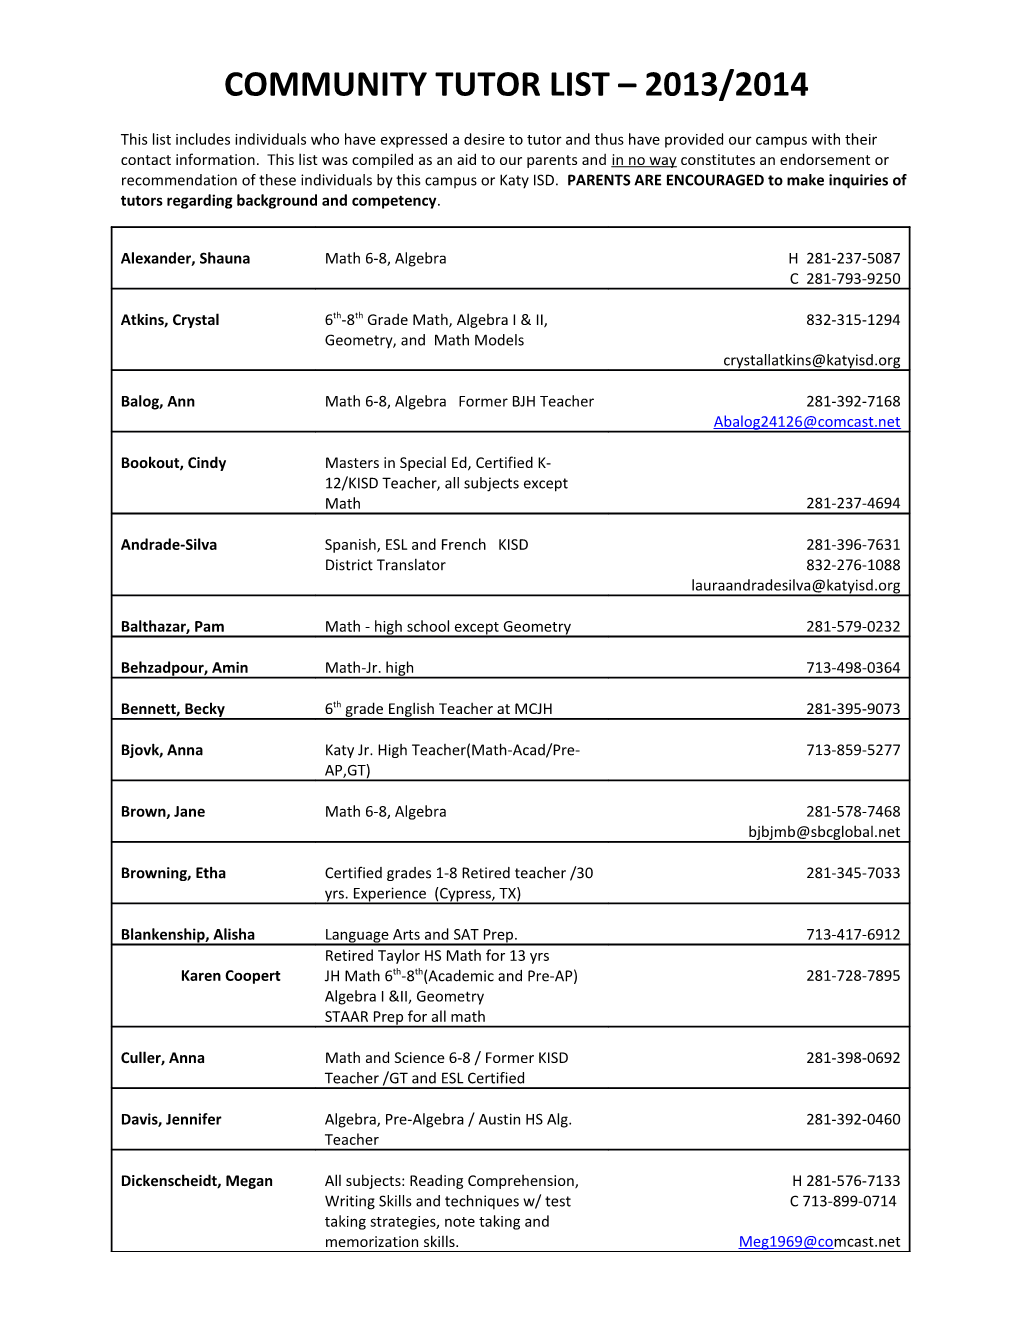 Community Tutor List 2013/2014